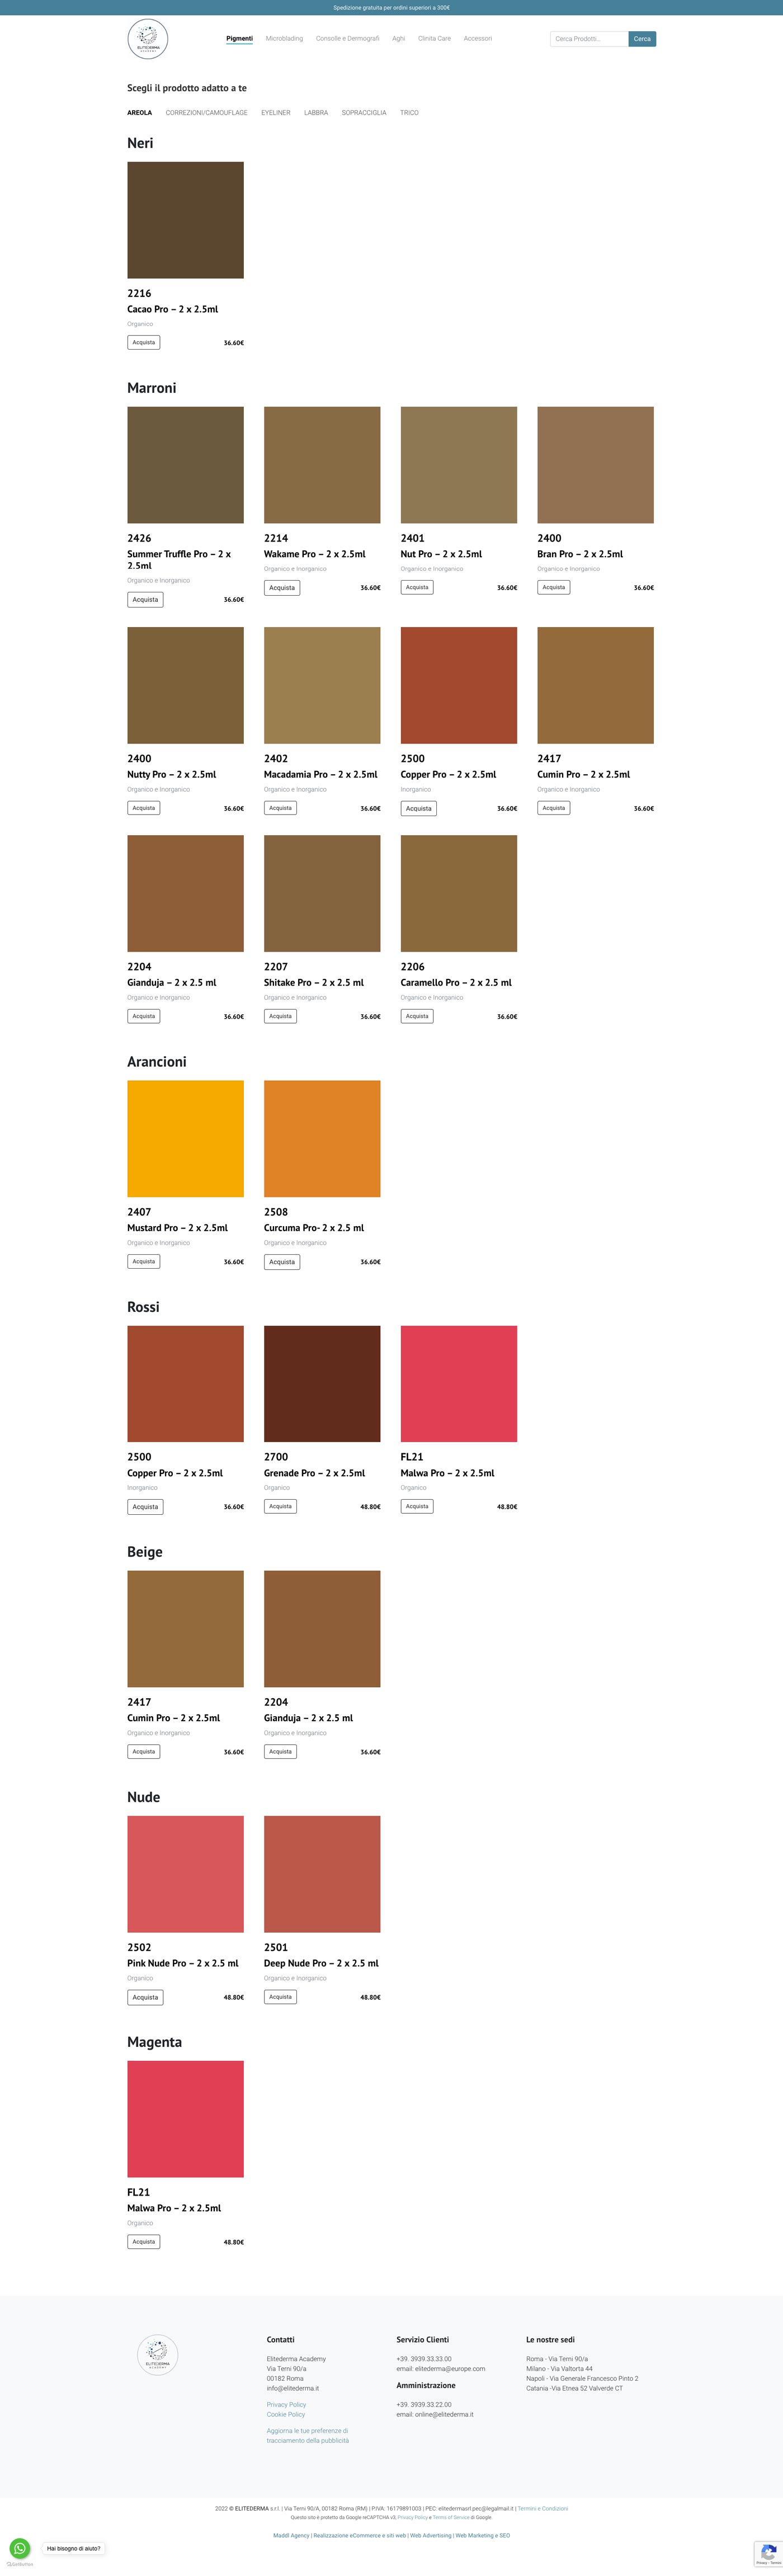 Pagina interna della categoria Pigmenti del sito web Elitederma realizzato da Maddl